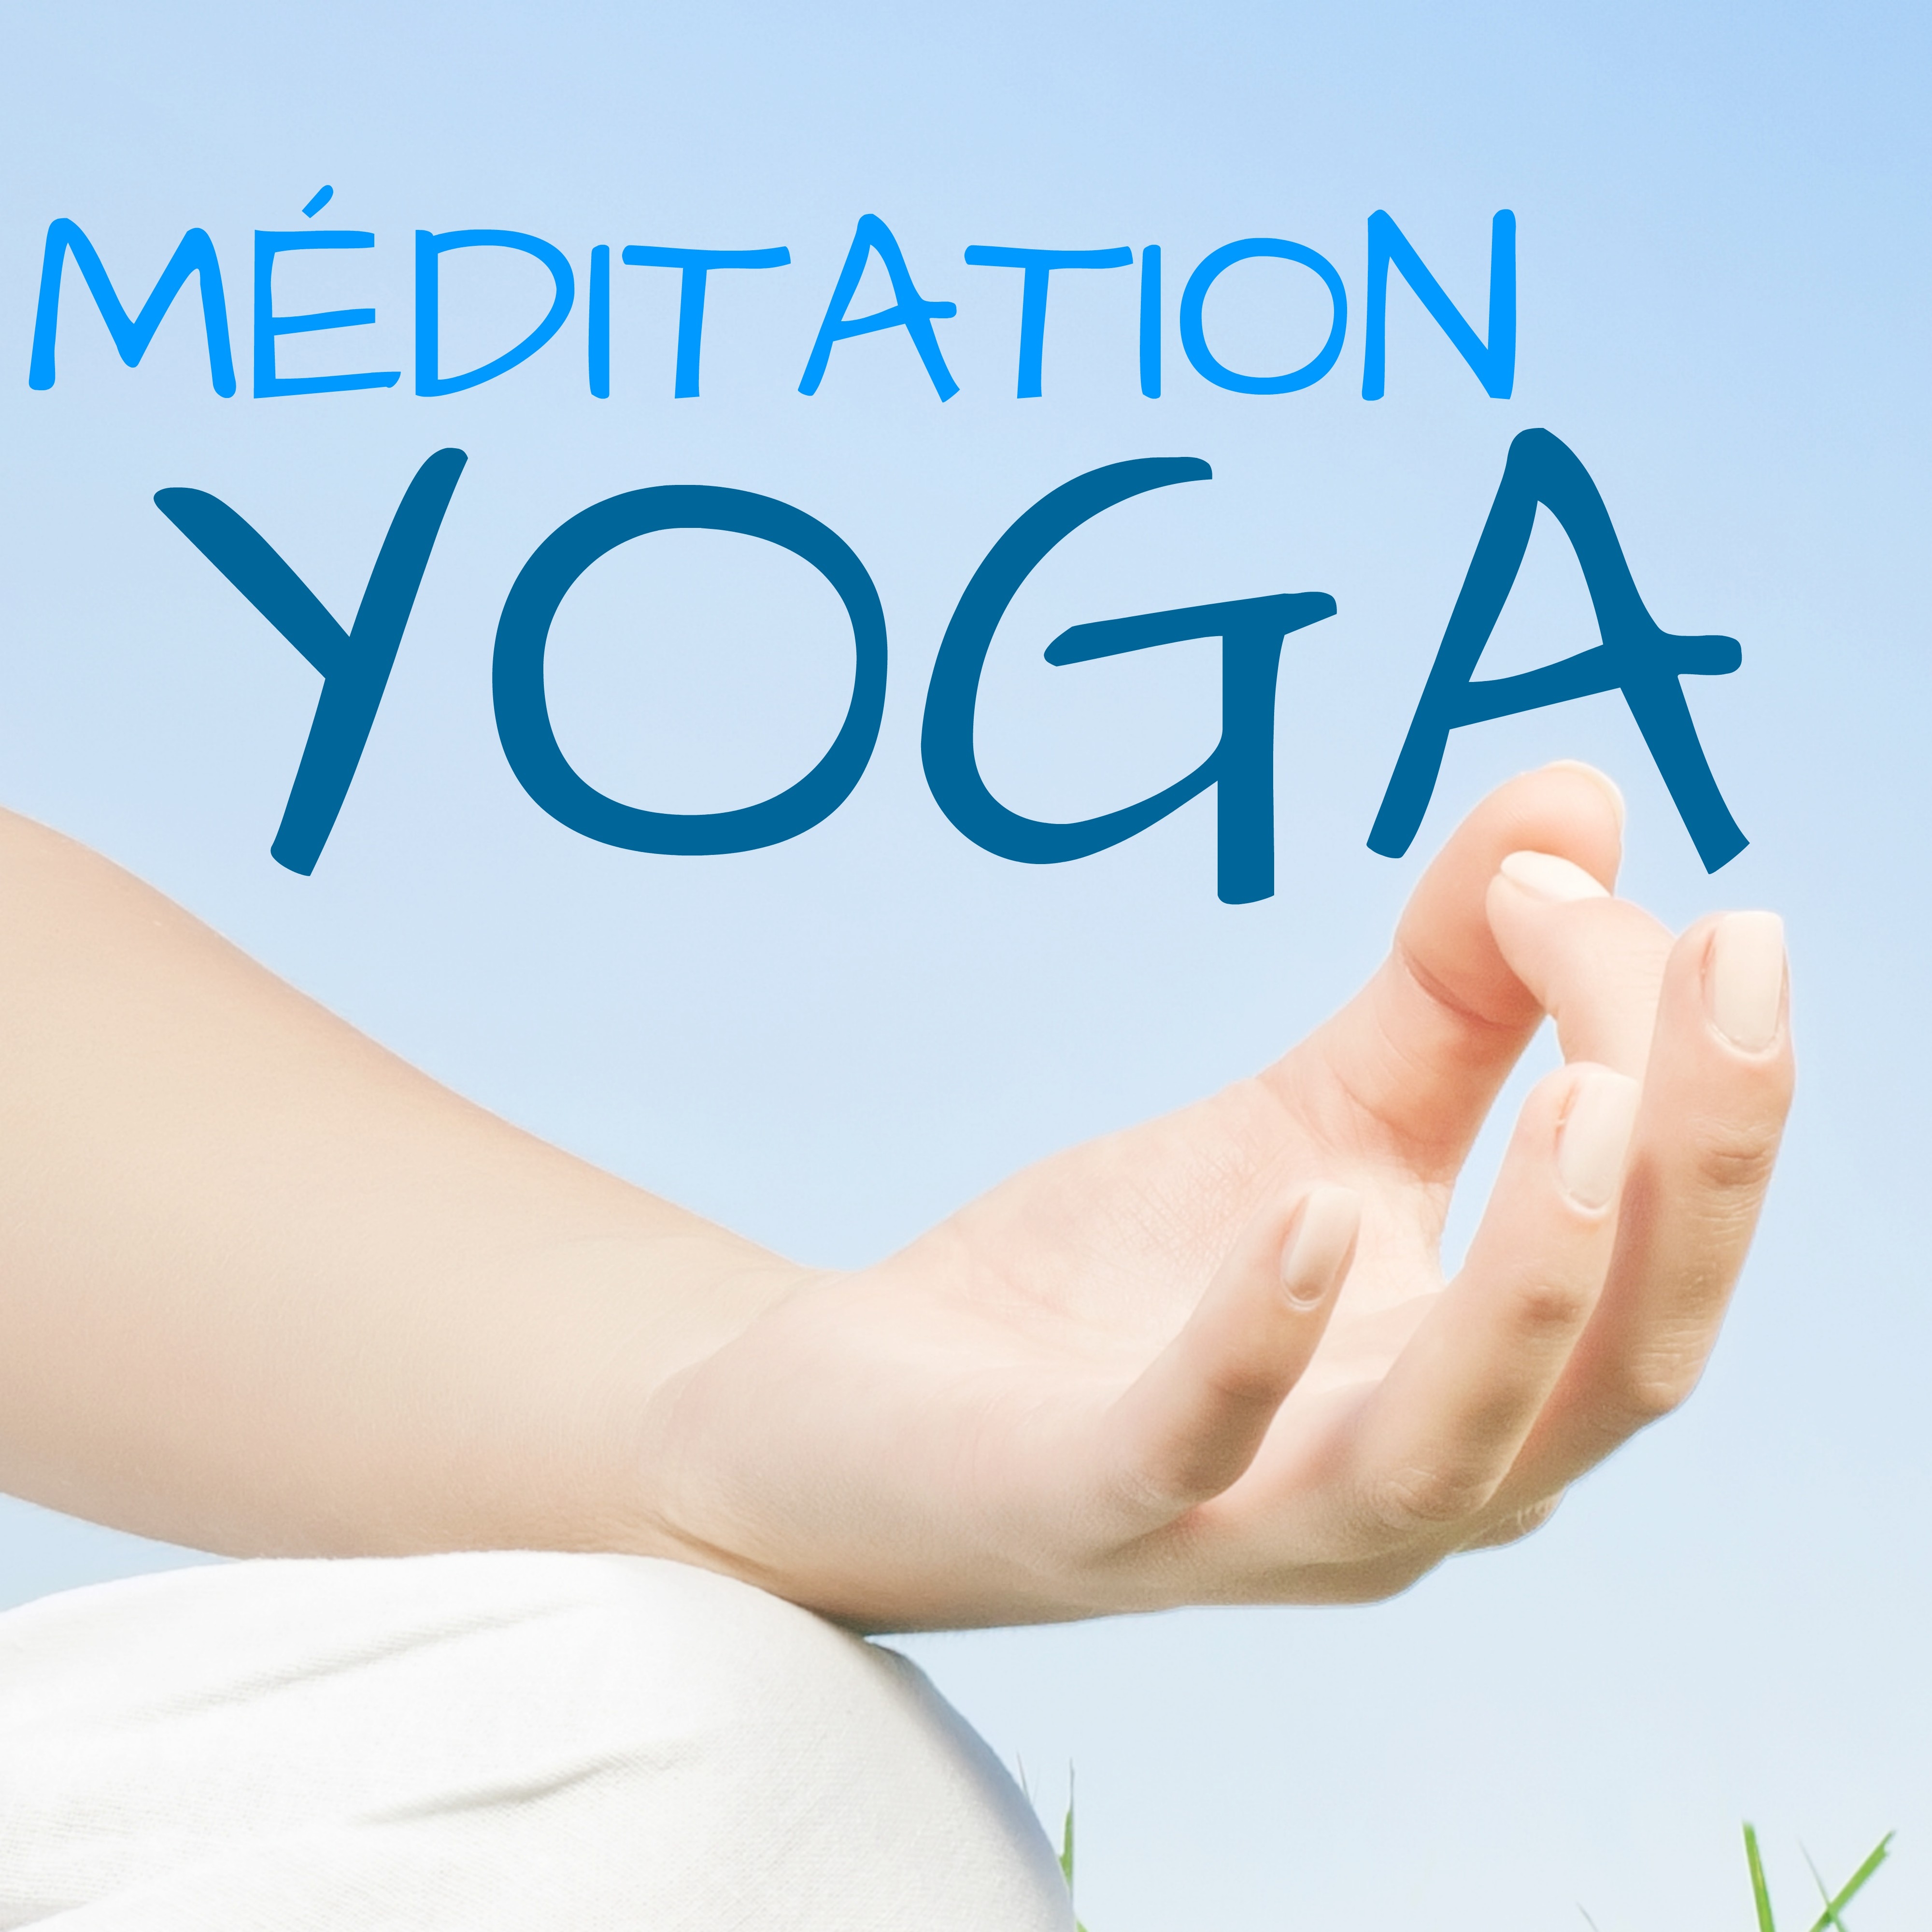 Me ditation Yoga  Compilation Musique Zen pour Yoga Reiki, Massage, Spa, Bien tre et Relaxation